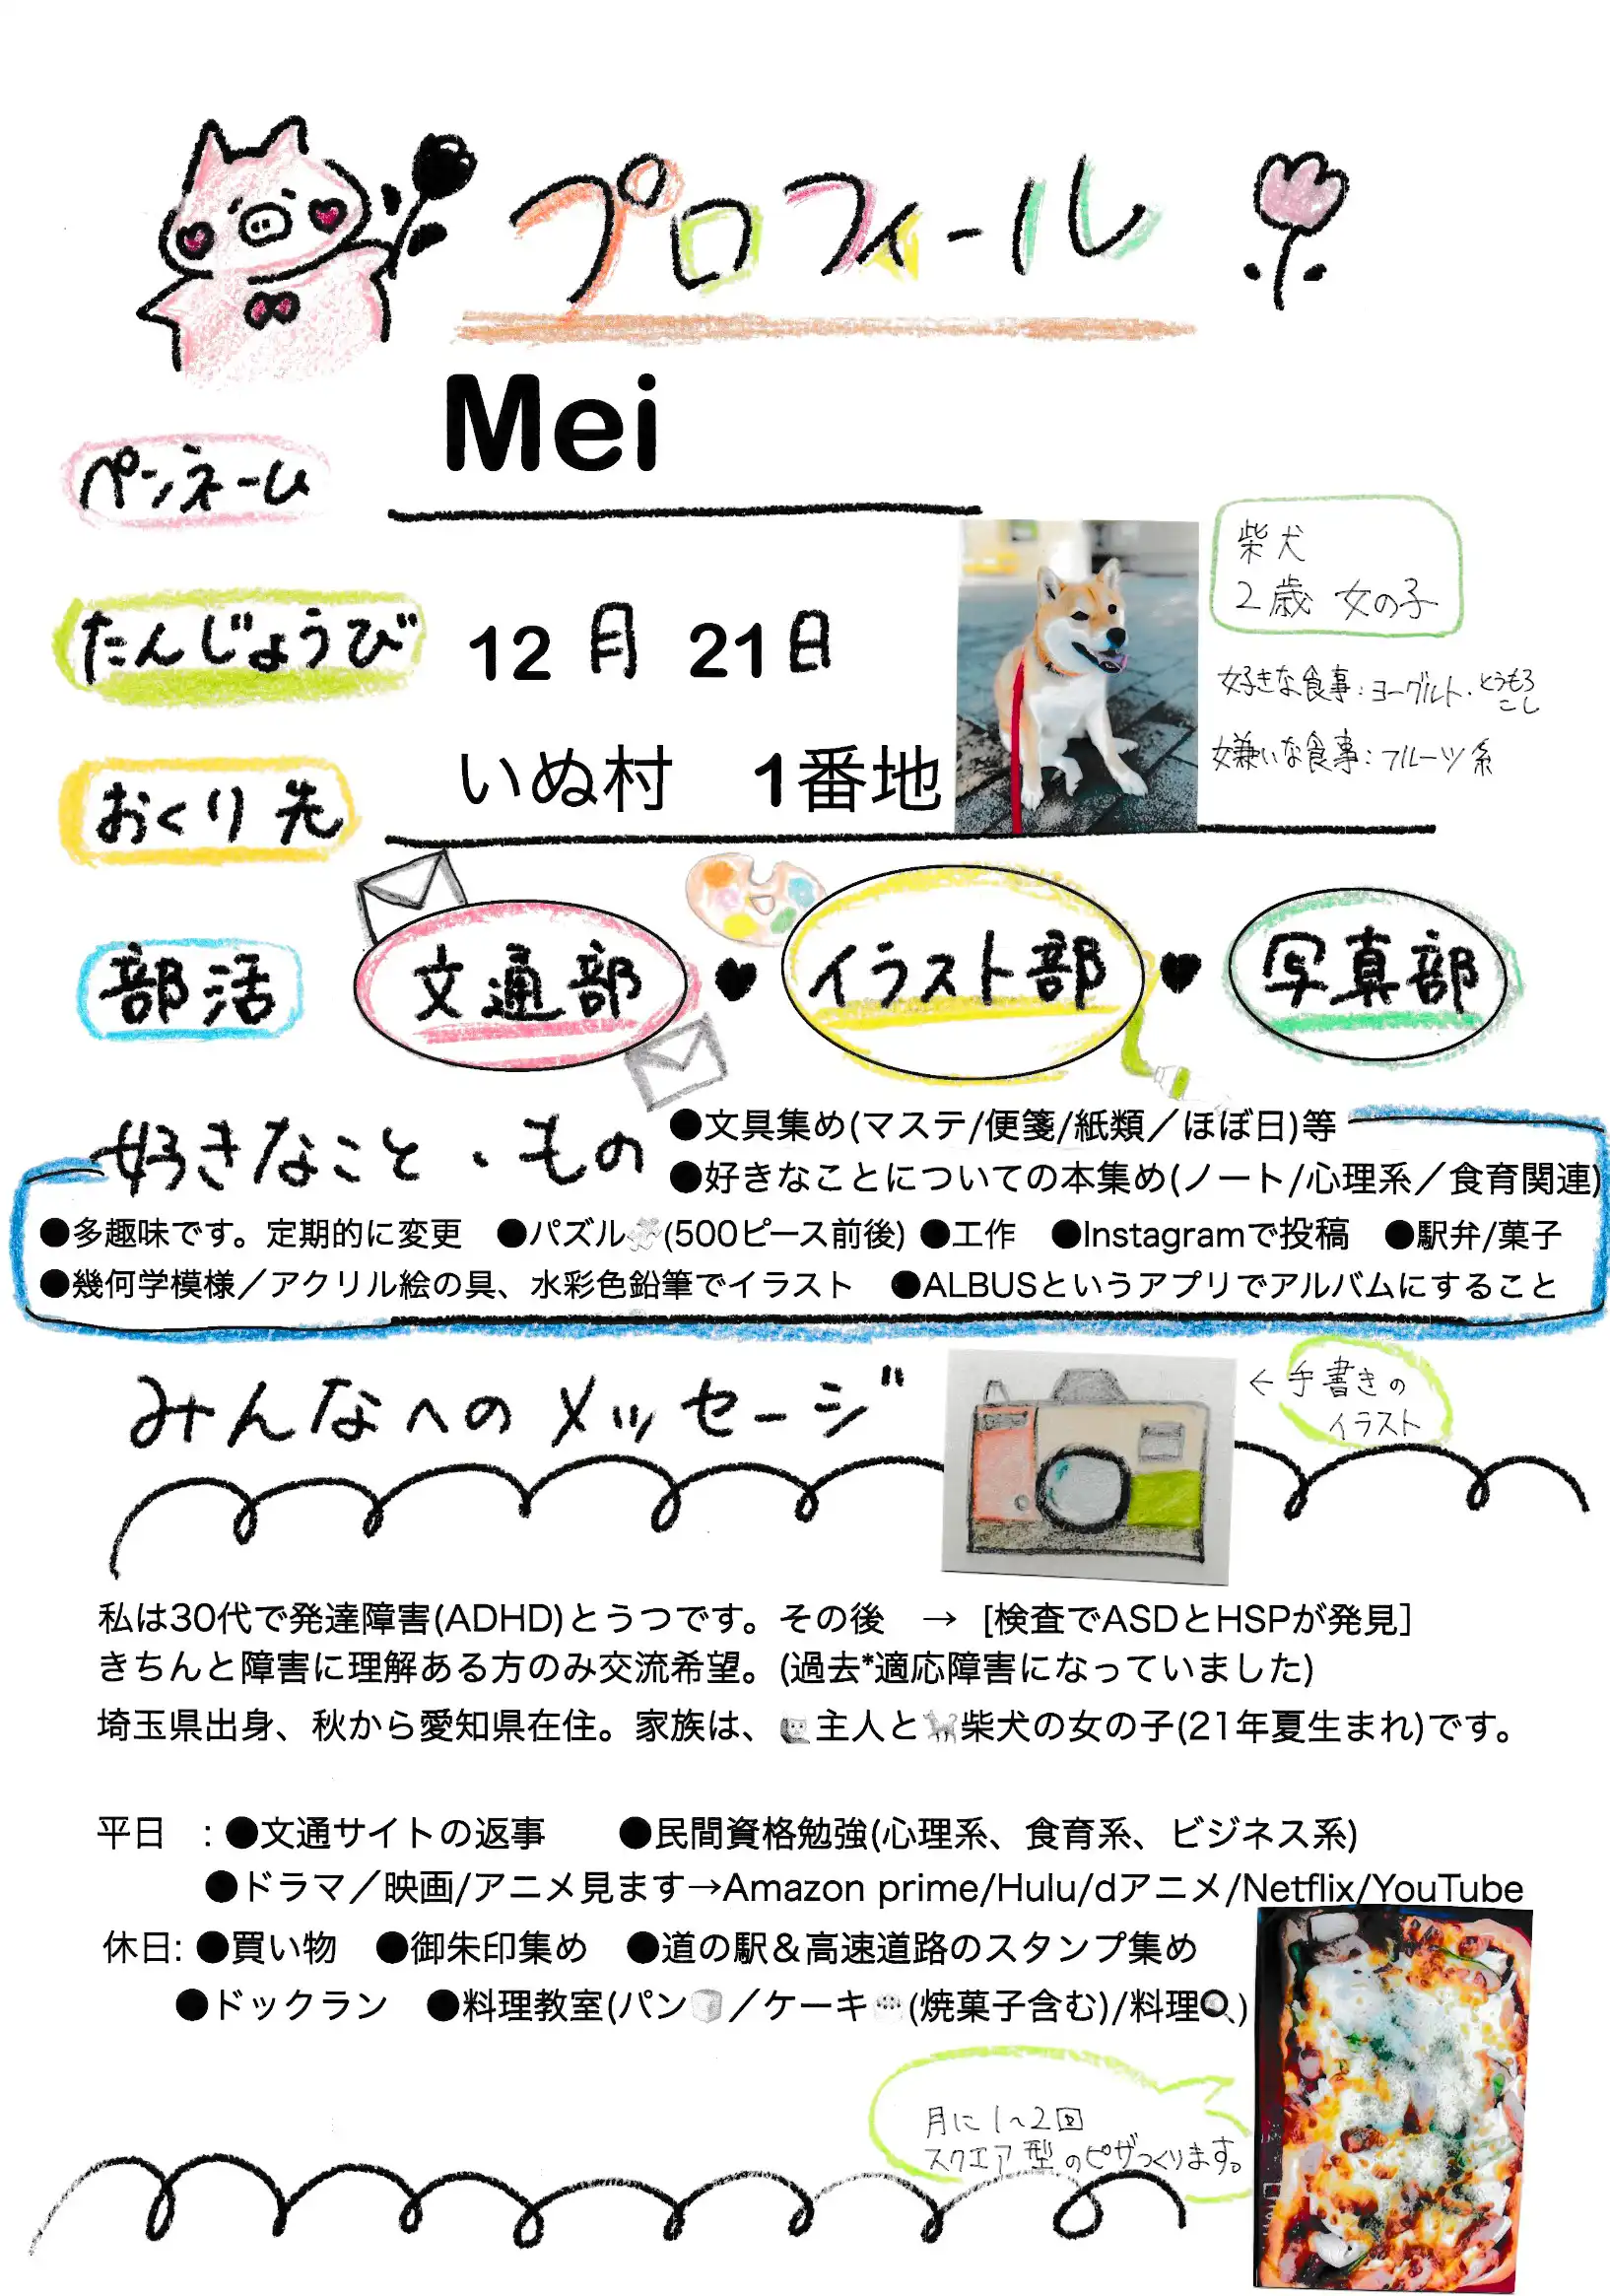 Meiさんのプロフィール画像